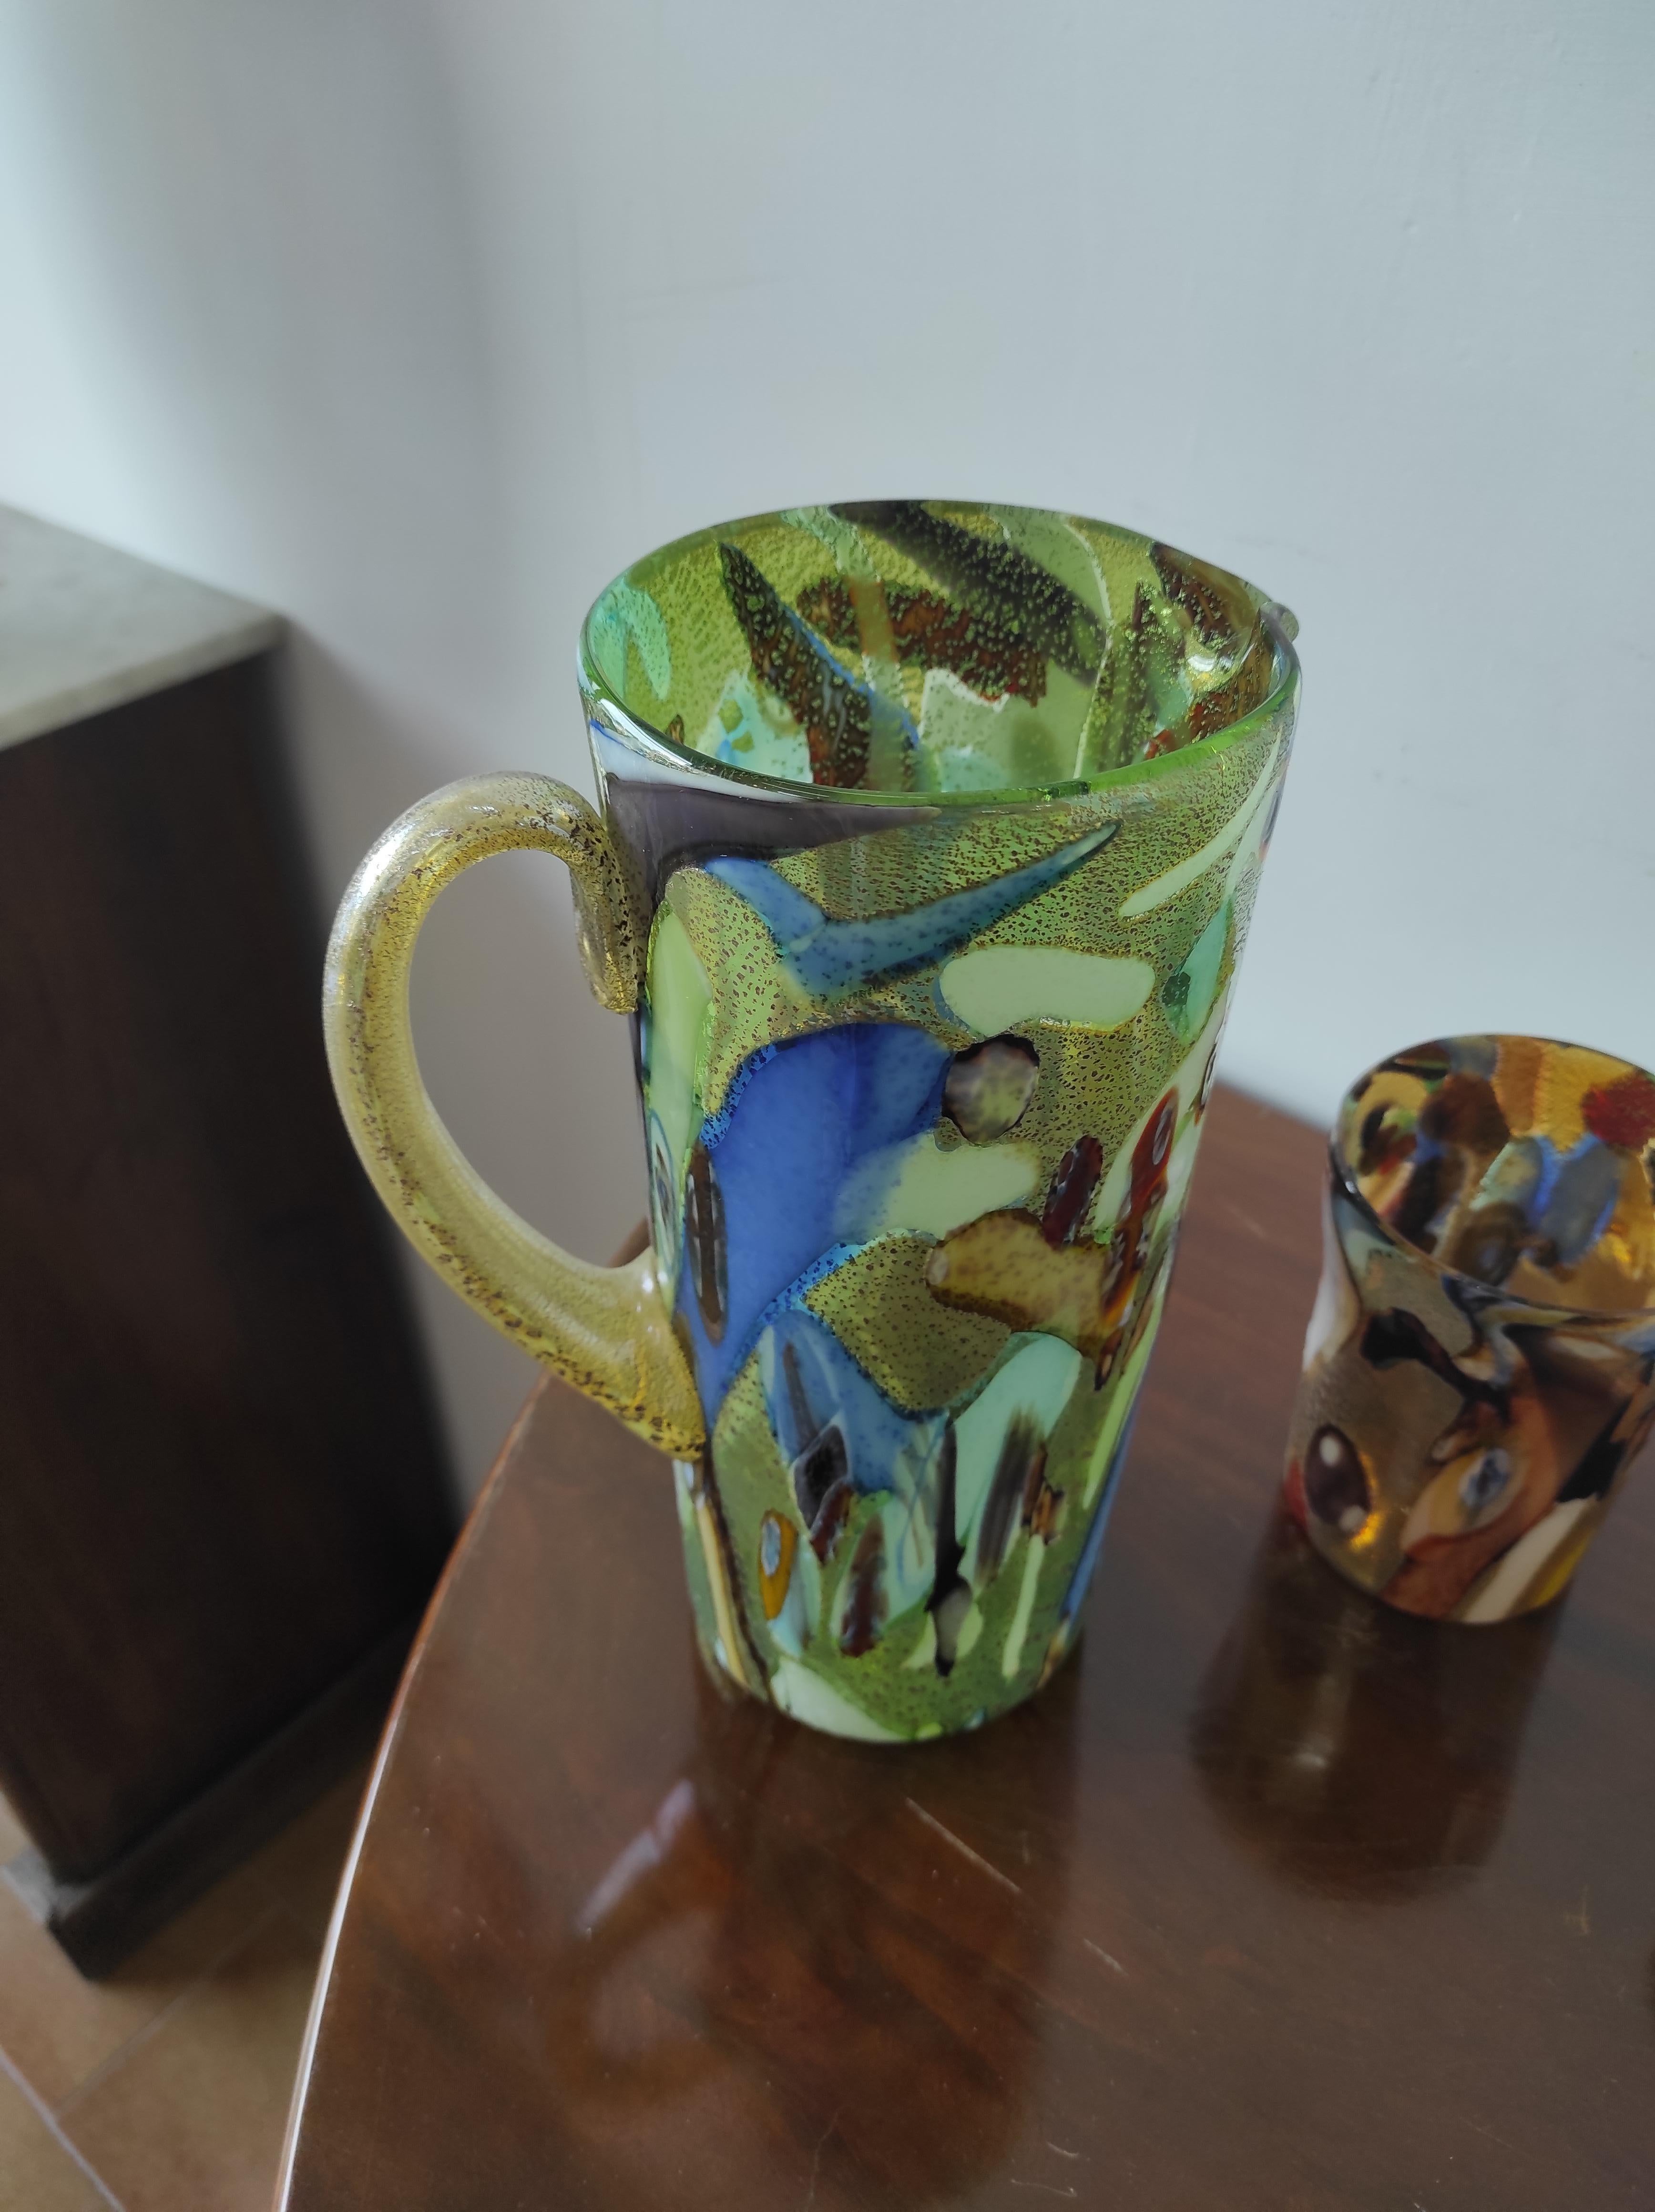 Set aus 6 mundgeblasenen Muranogläsern und Karaffe.
Diese Gläser werden in Murano geblasen und zeichnen sich vor allem durch ihre Leichtigkeit aus.
Sie enthalten Berührungen (Glasstücke) und Murrine.
Die Verzierung jedes einzelnen Glases ist nicht